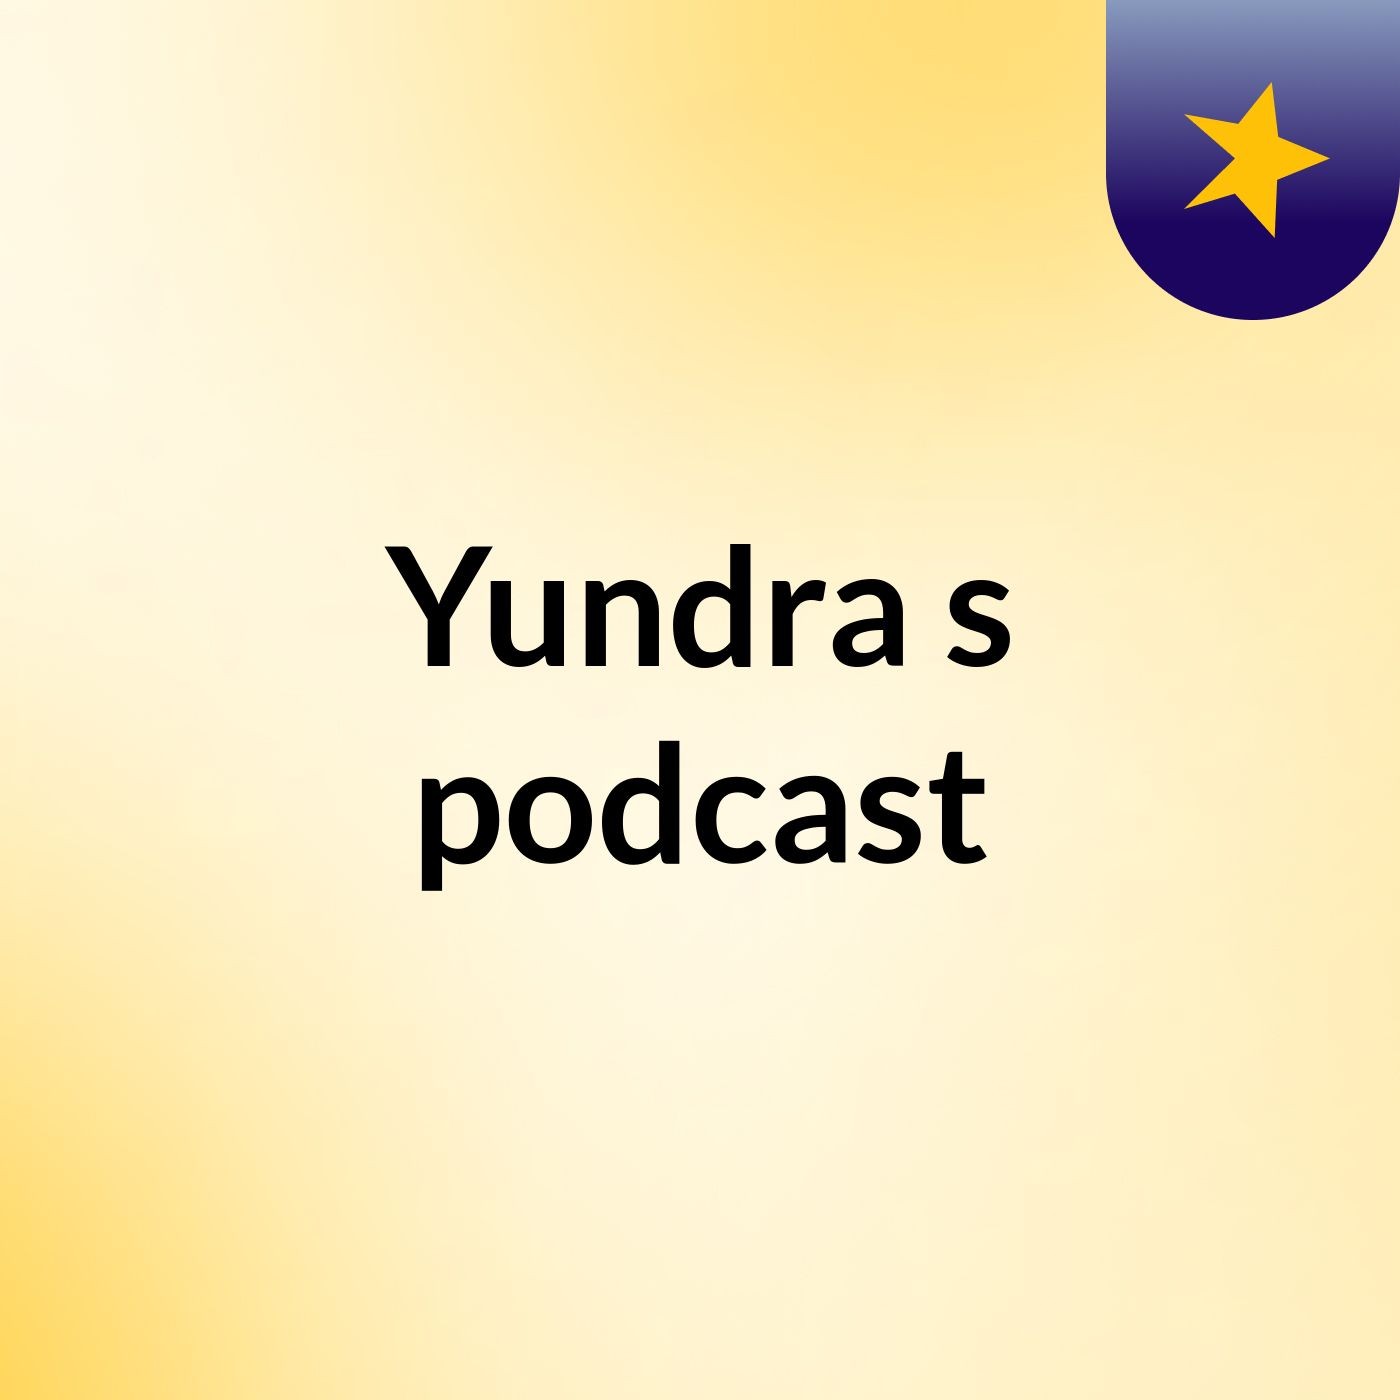 Yundra's podcast